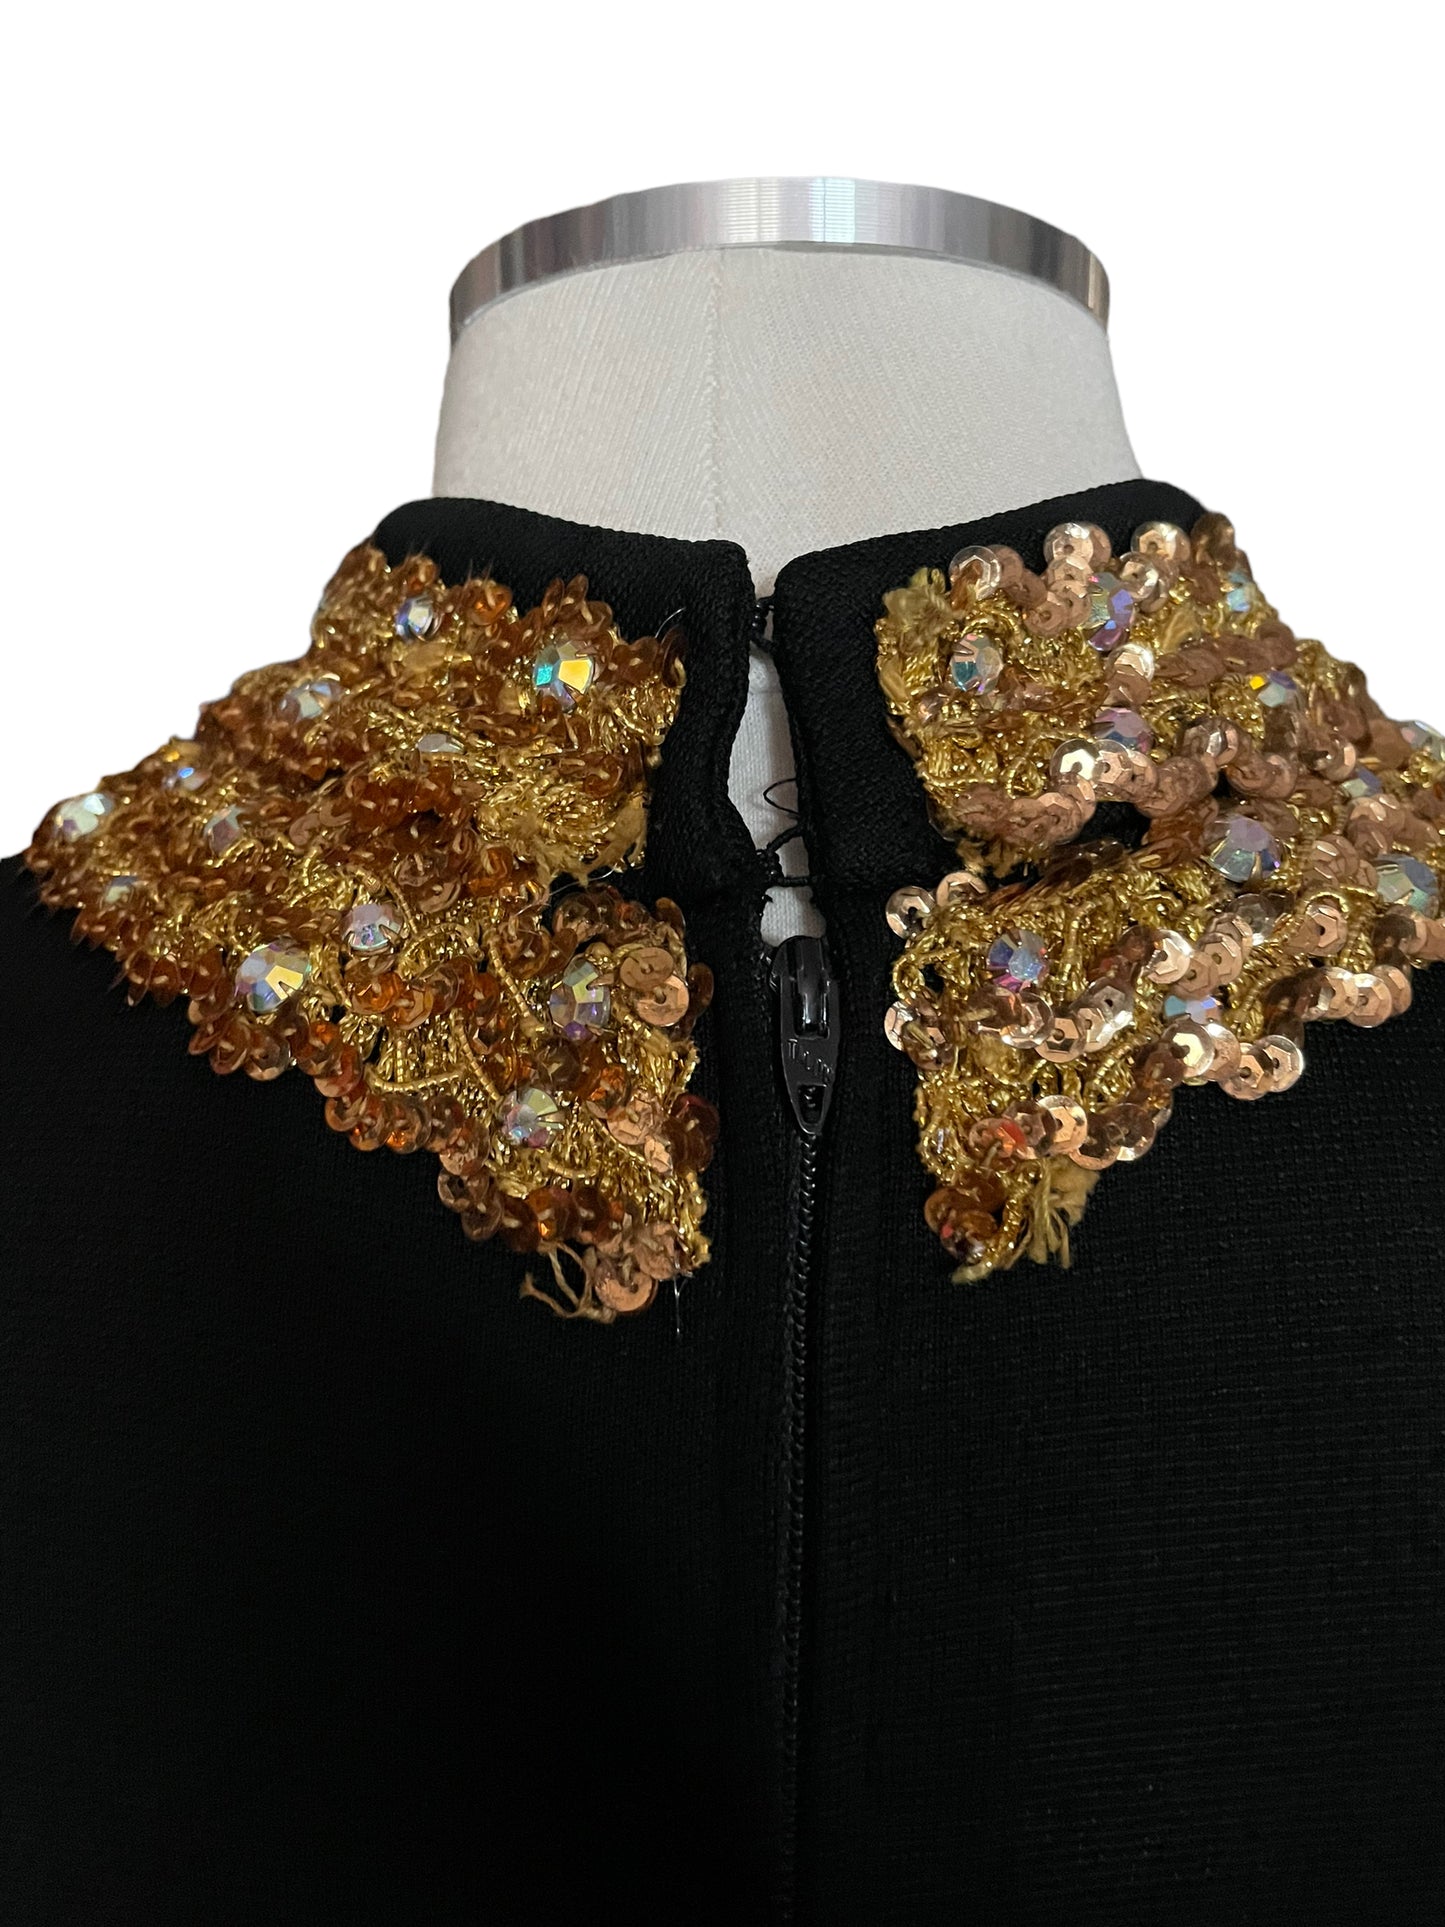 Back collar closure view Vintage 1960s Bejeweled Pantsuit SZ M-L